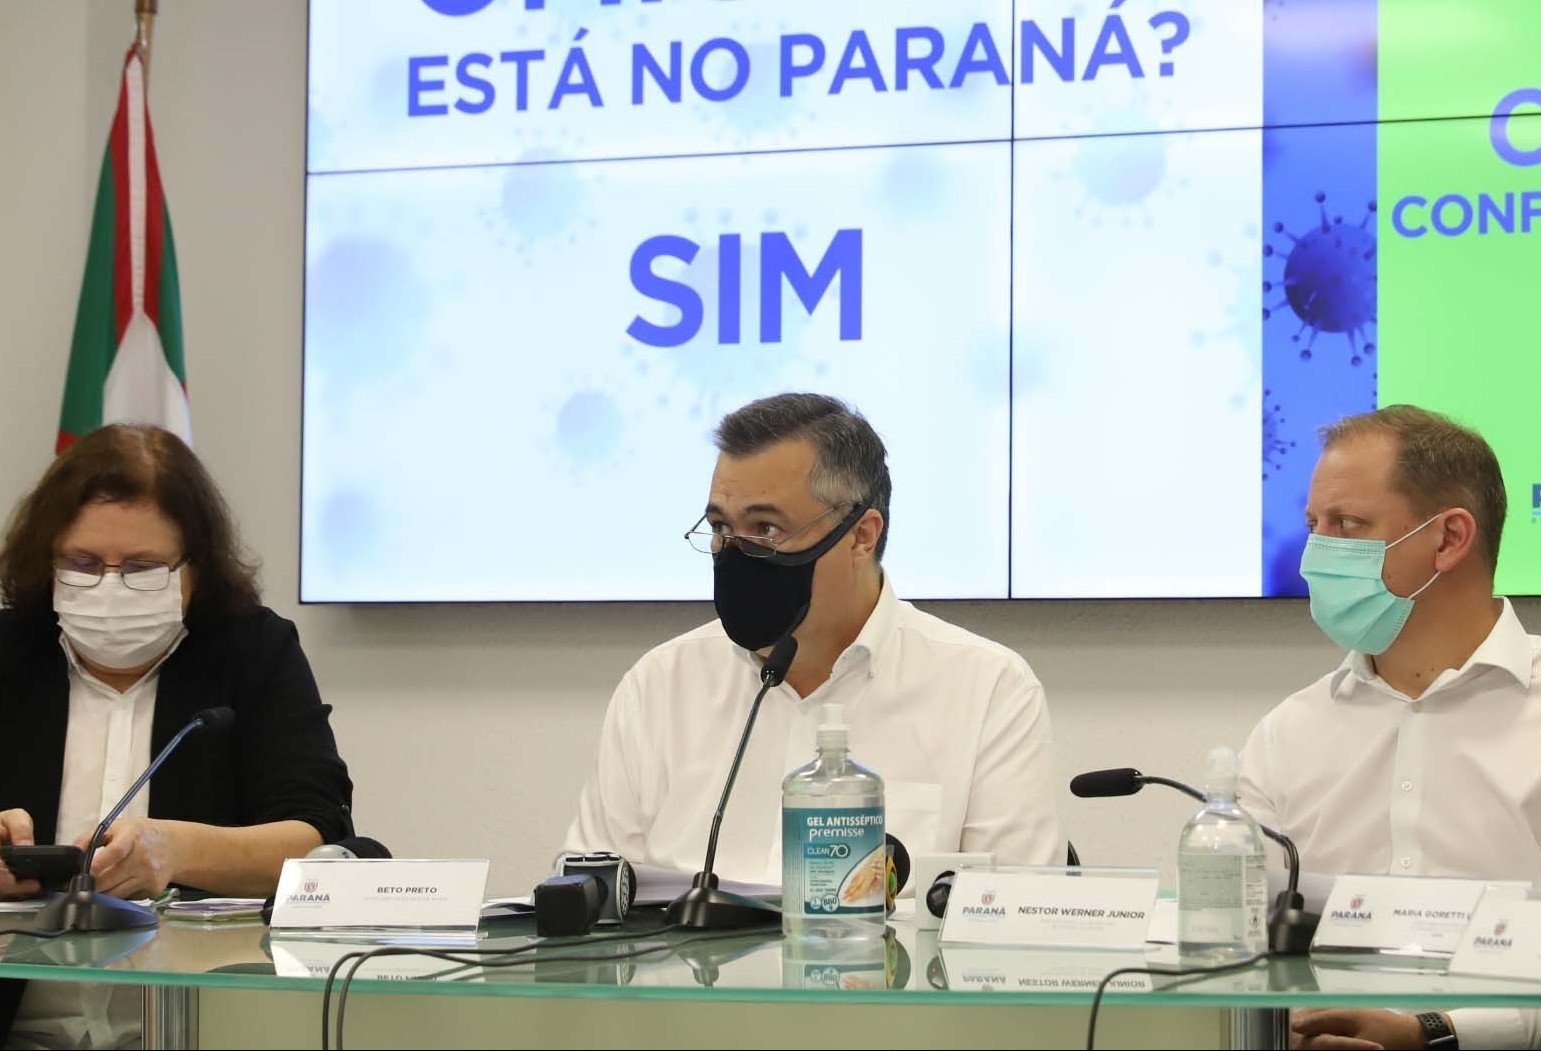 Paraná declara epidemia de H3N2 